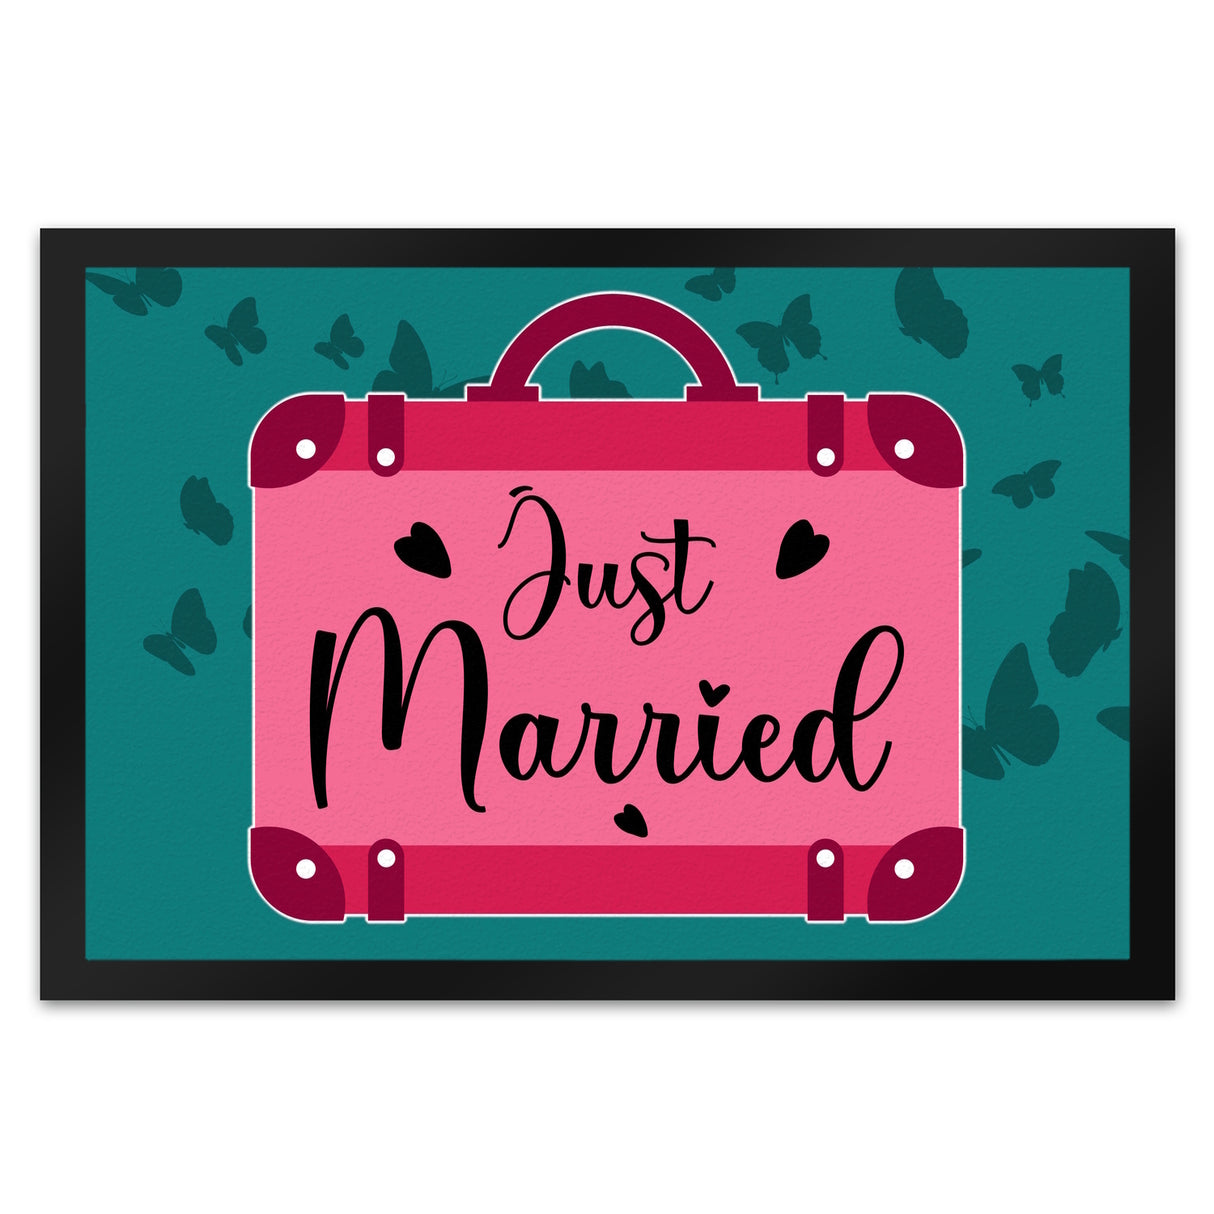 Just married Hochzeit Fußmatte in 35x50 cm mit pinkem Koffer